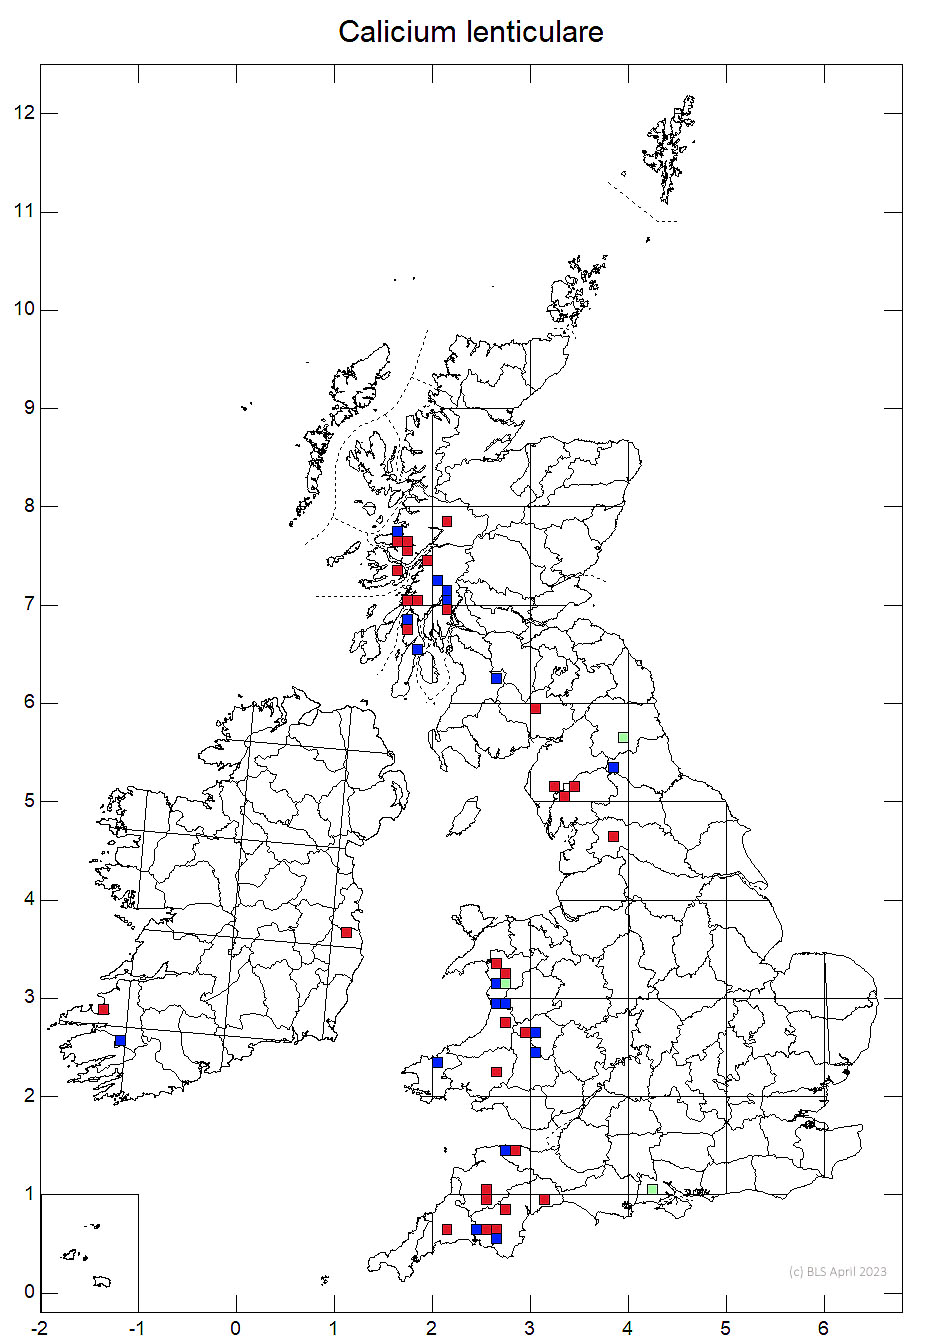 Calicium lenticulare 10km sq distribution map